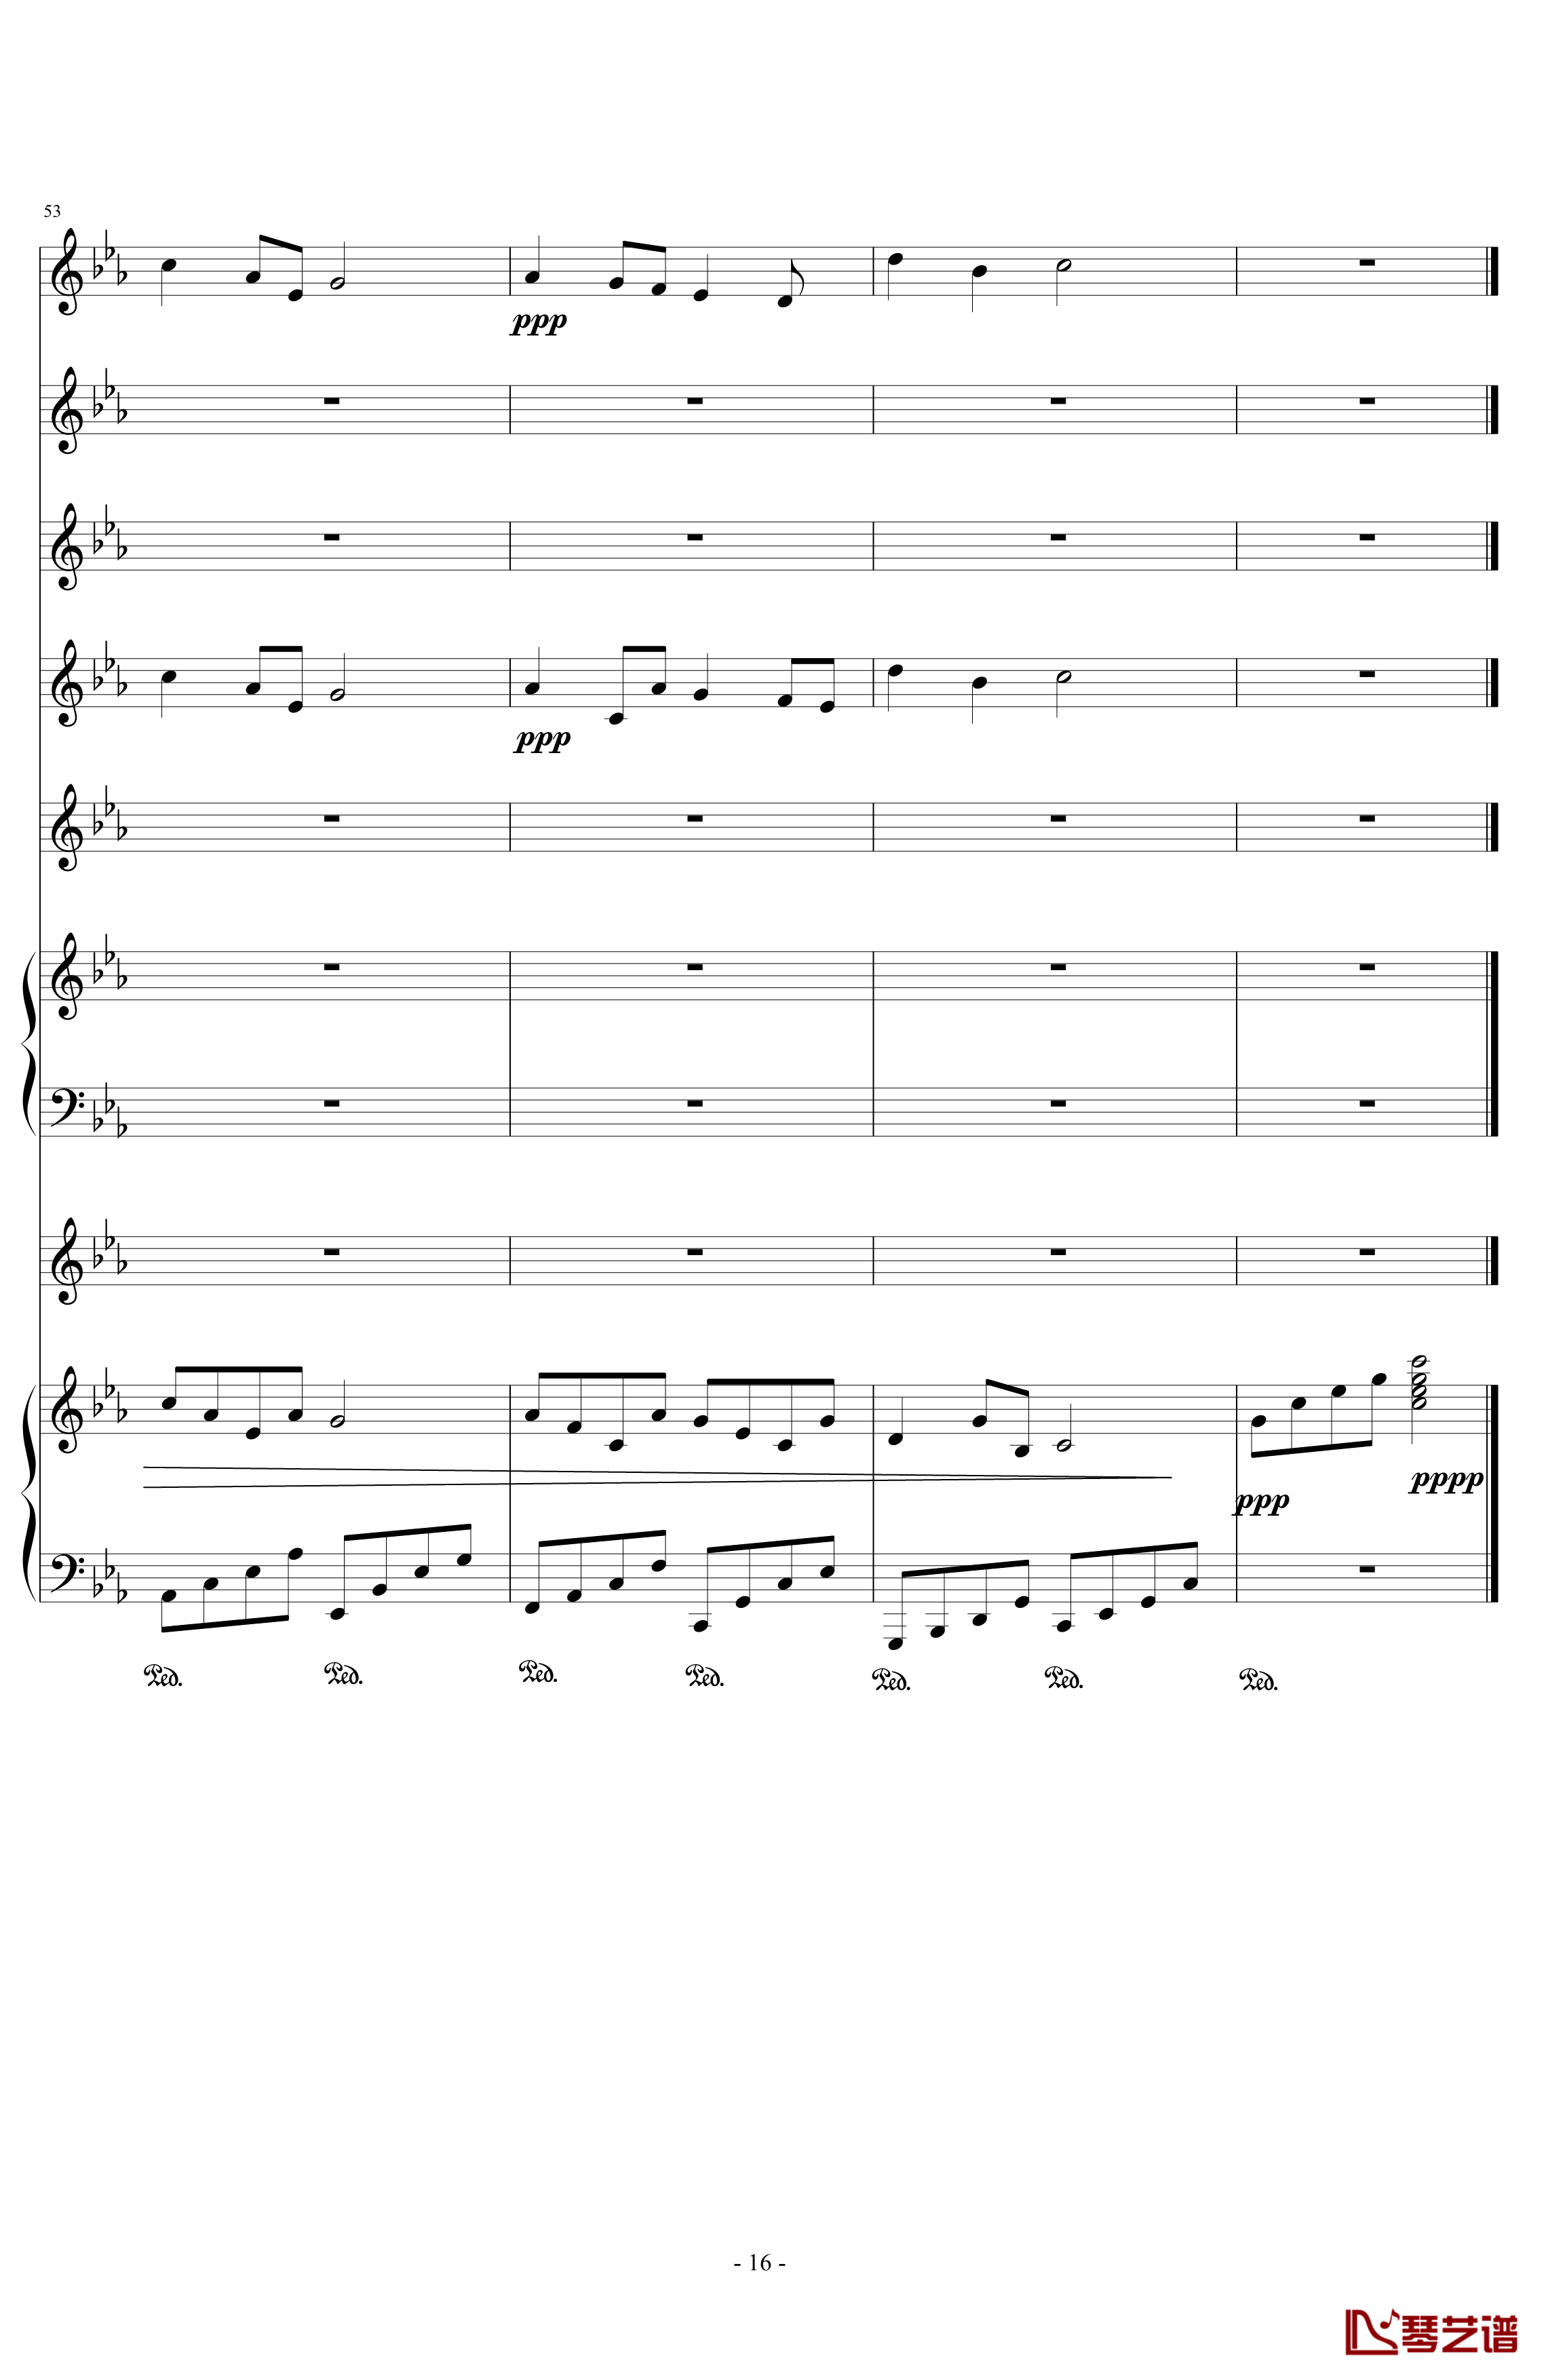 夜的流星雨钢琴谱-lcdkldm16